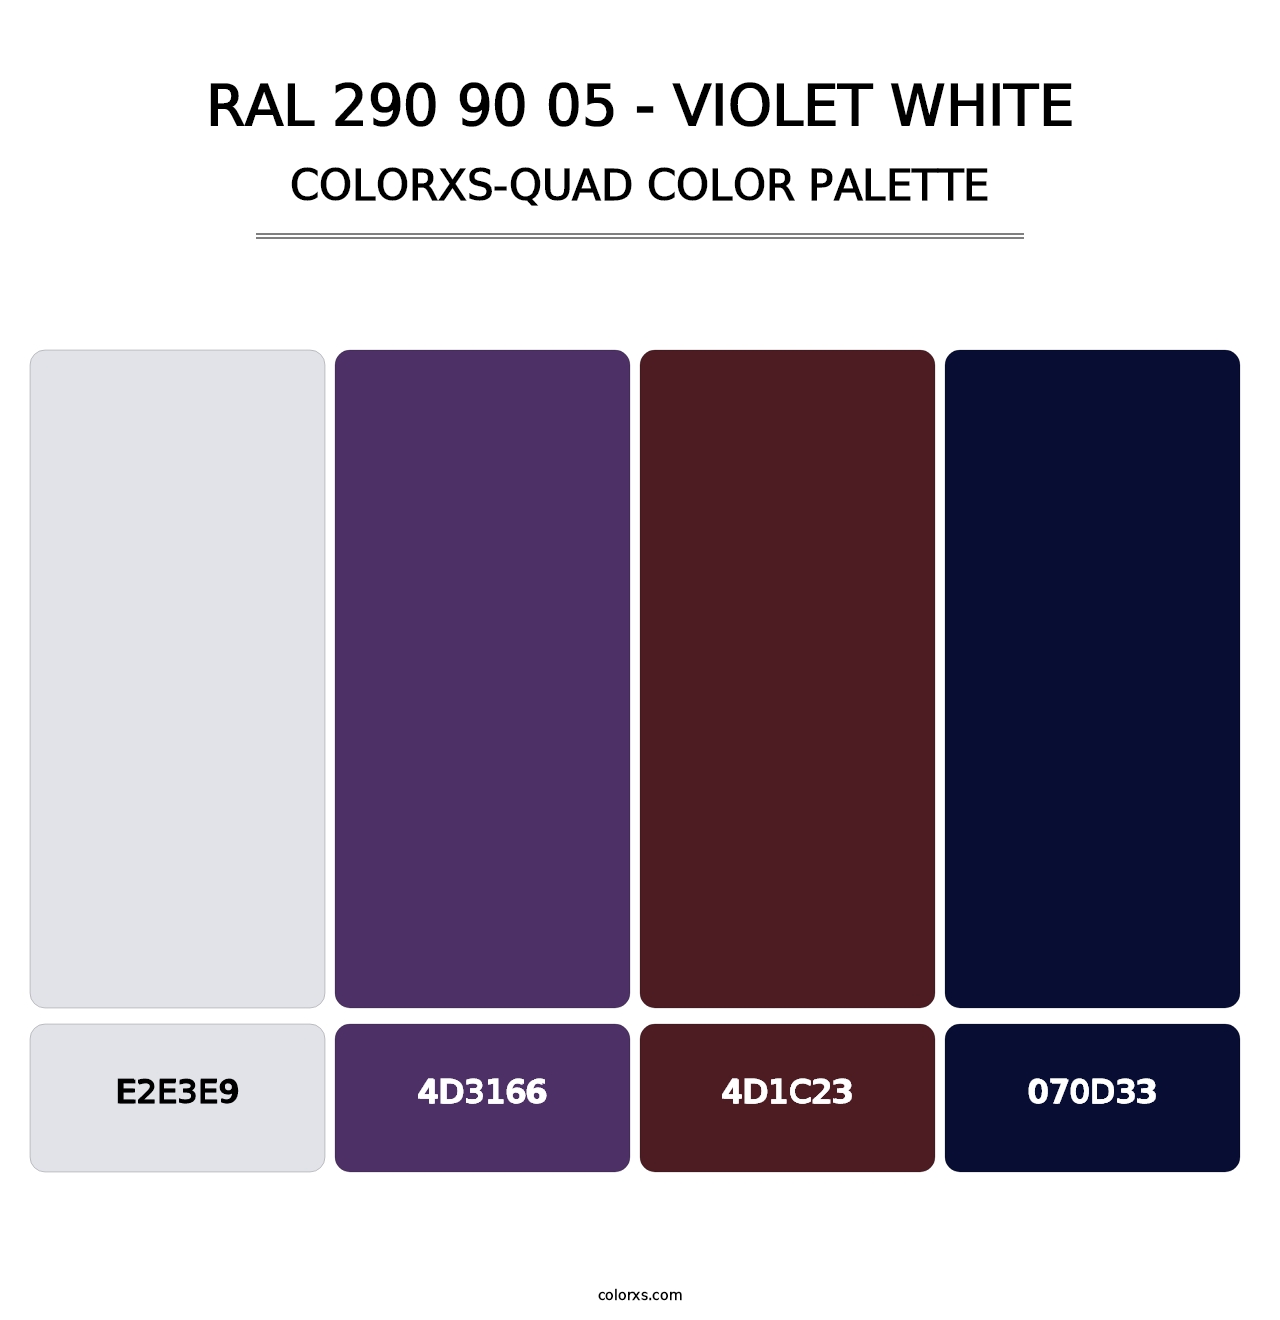 RAL 290 90 05 - Violet White - Colorxs Quad Palette